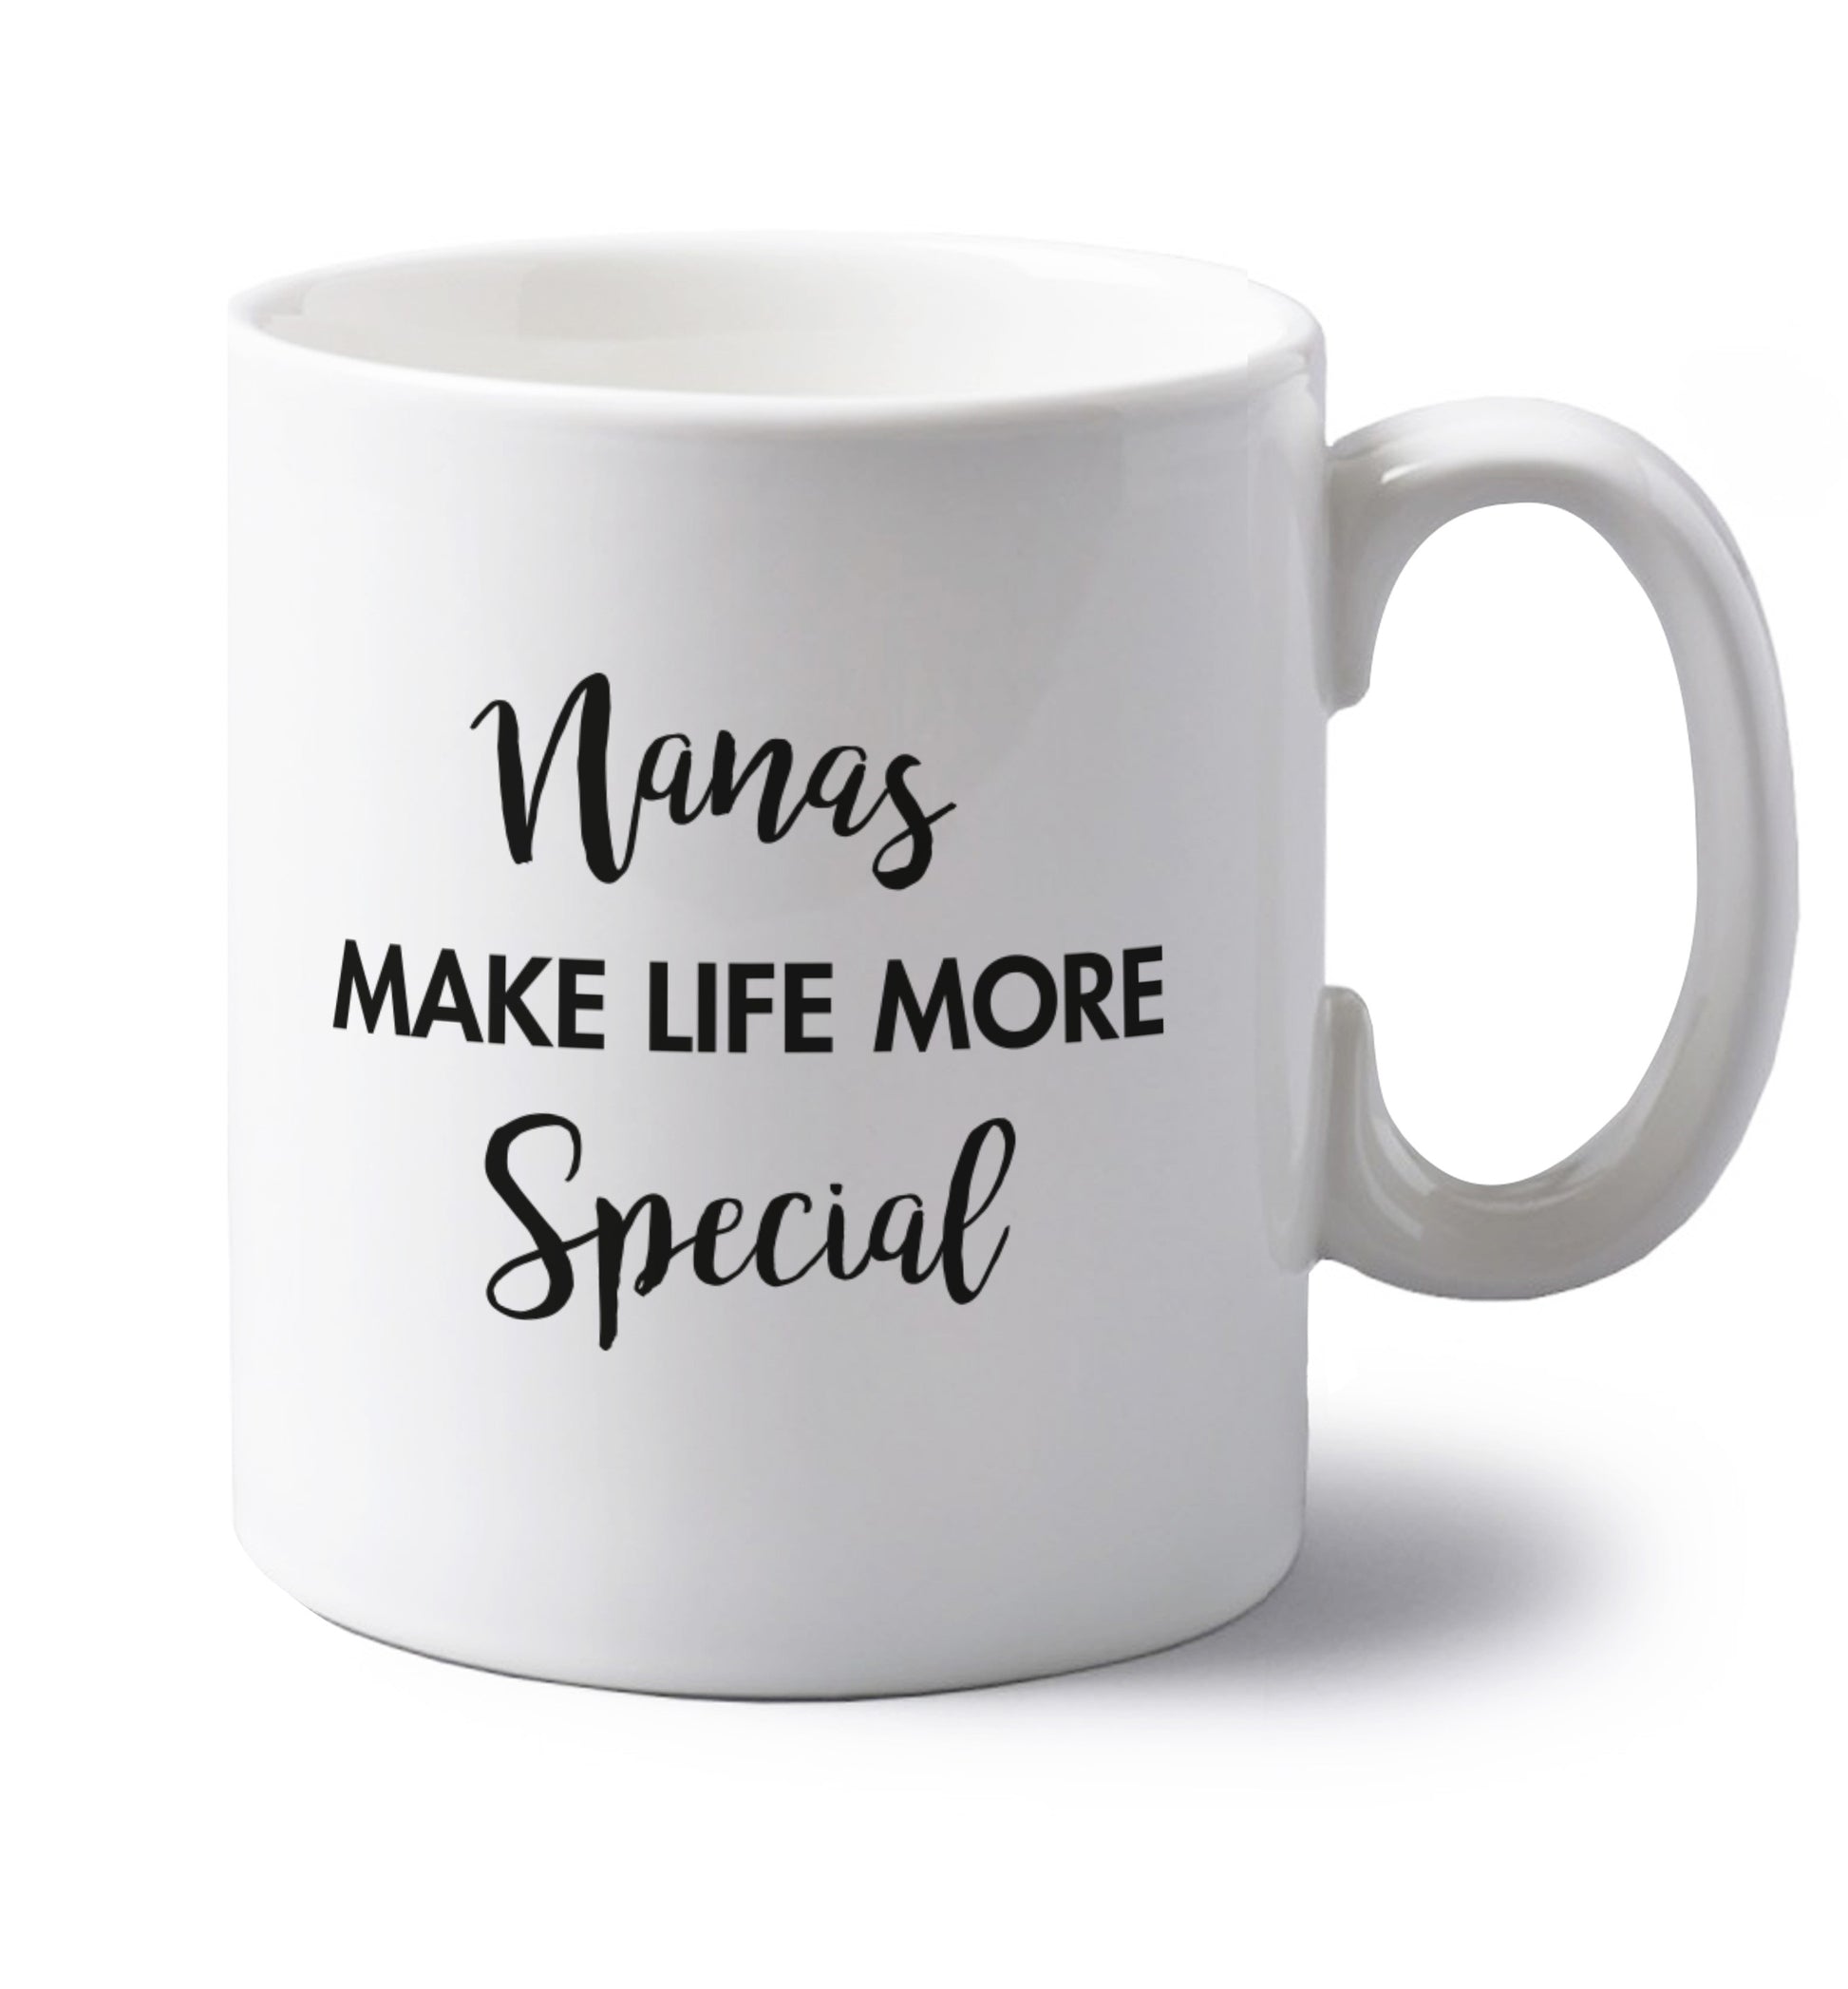 Nanas make life more special left handed white ceramic mug 